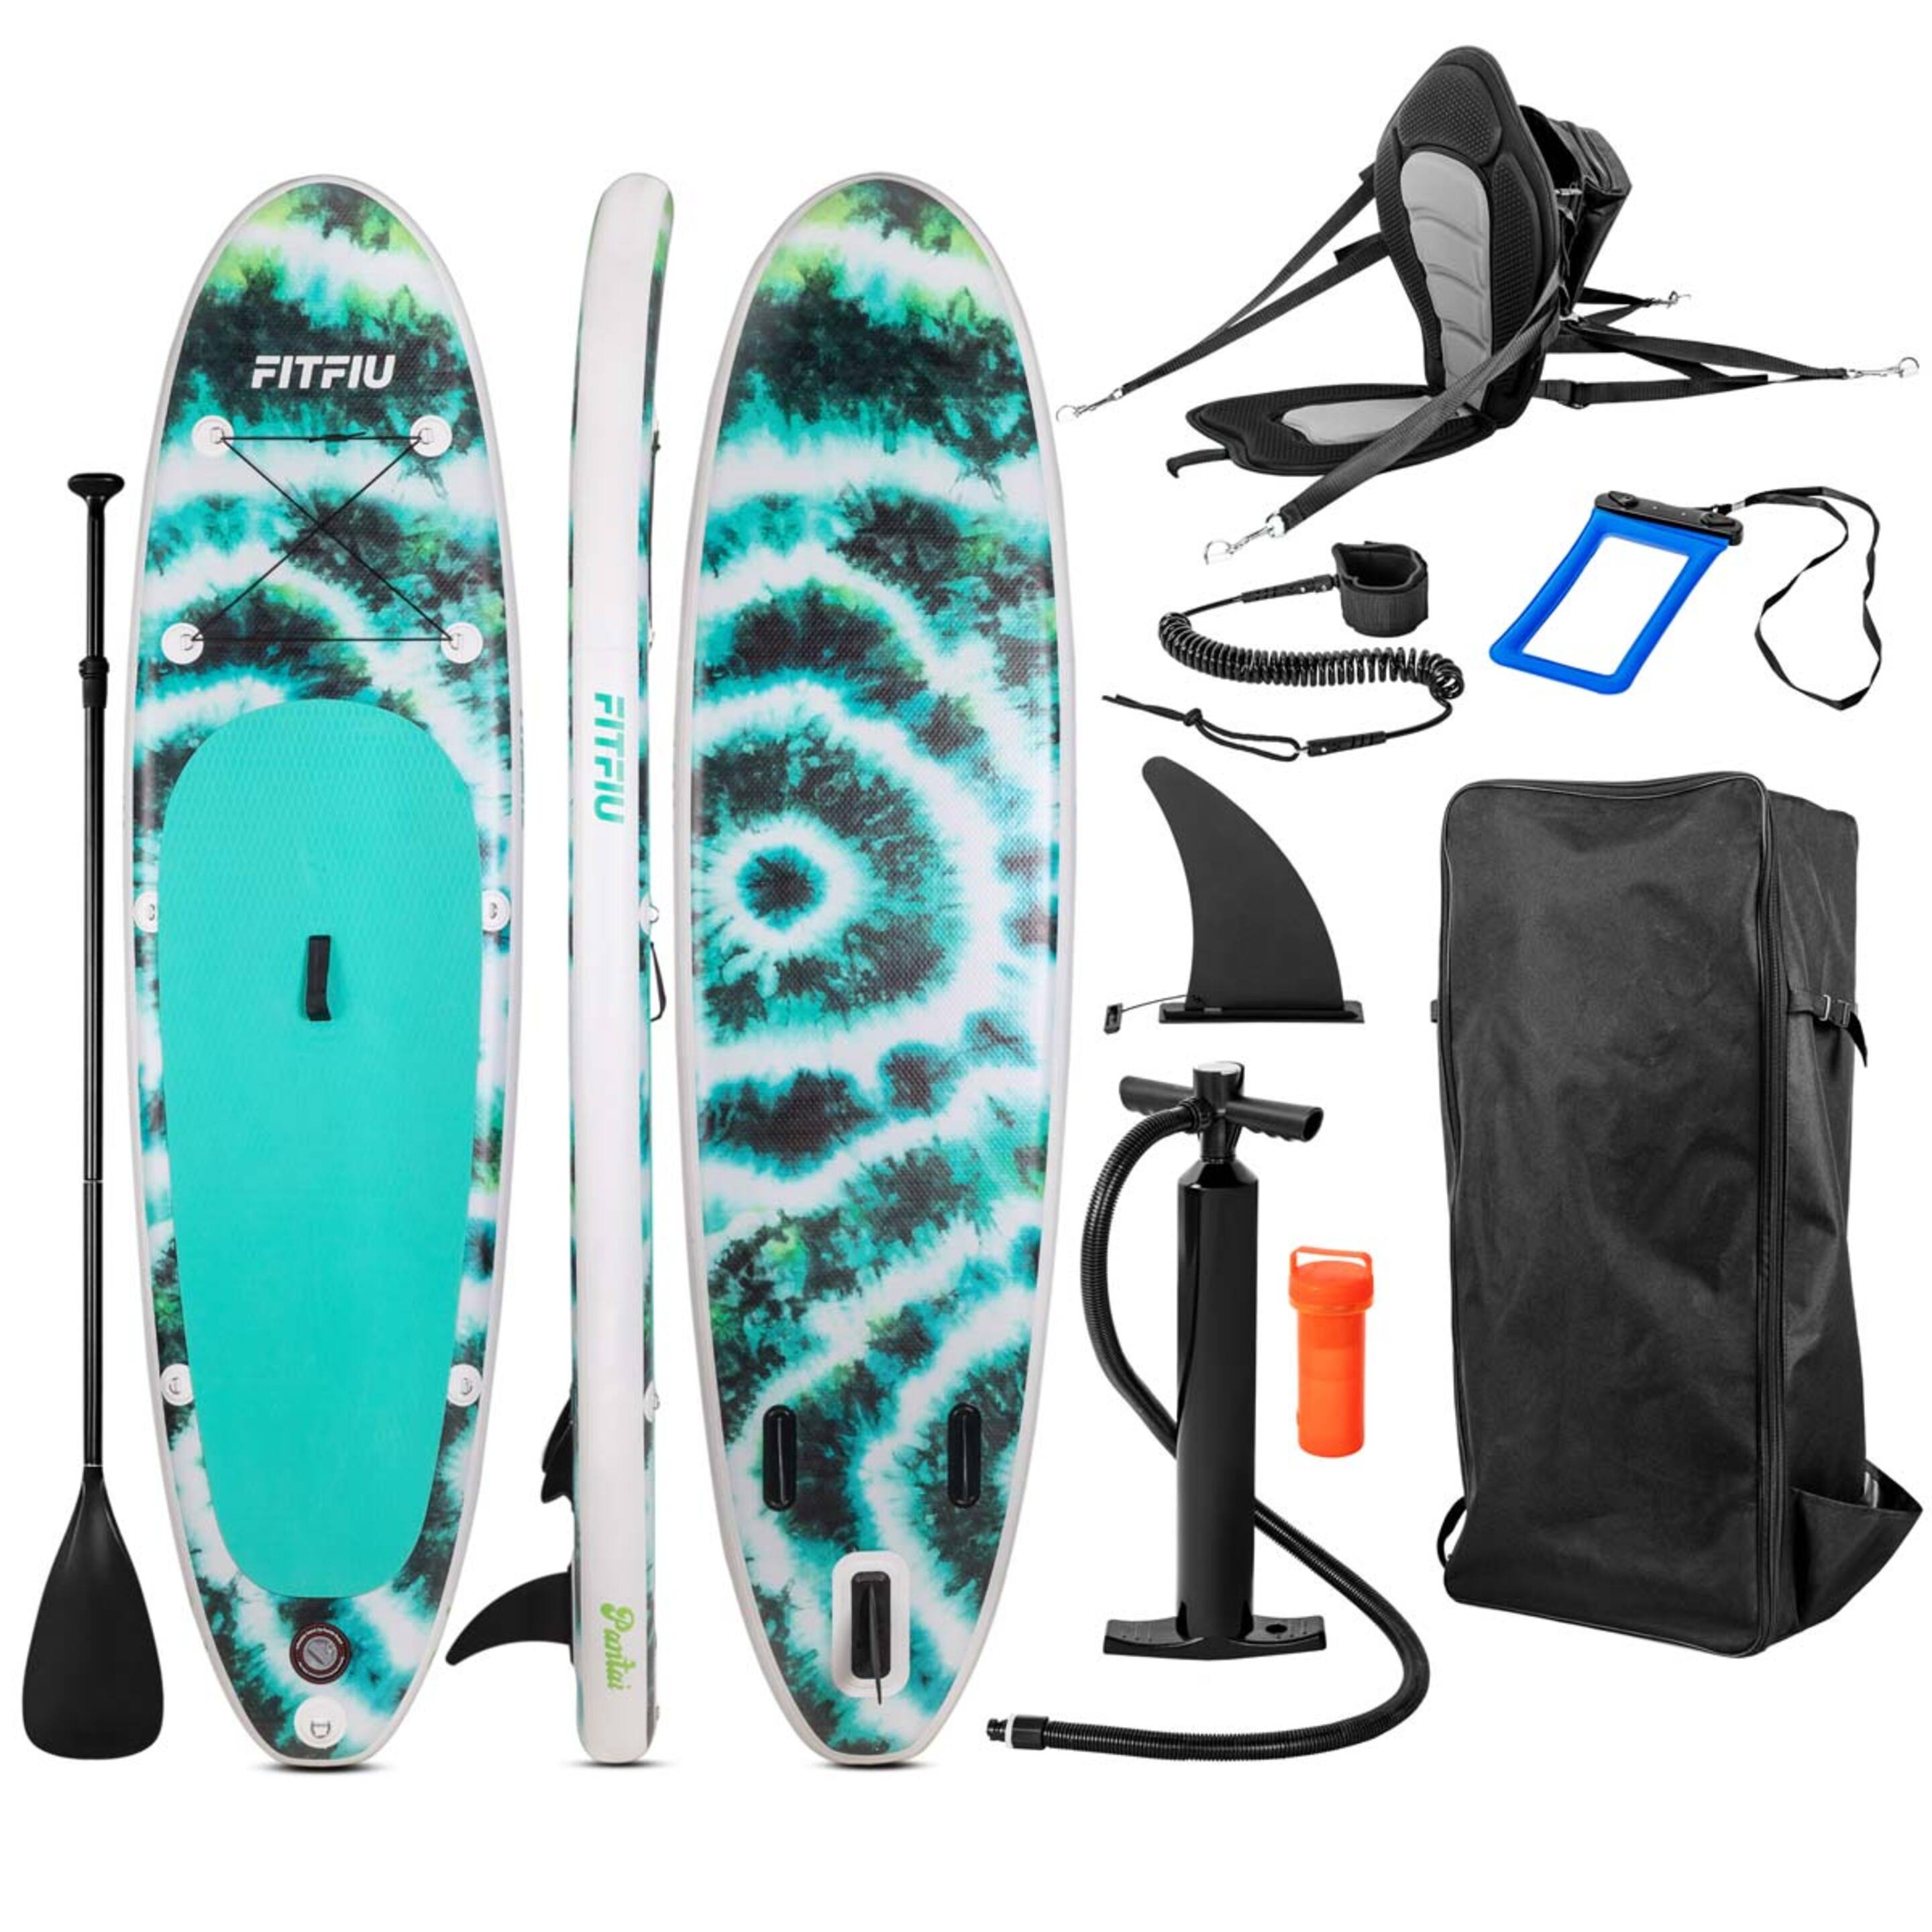 Tabla Paddle Surf Hinchable Fitfiu Con Accesorios Y Diseño Tie-dye